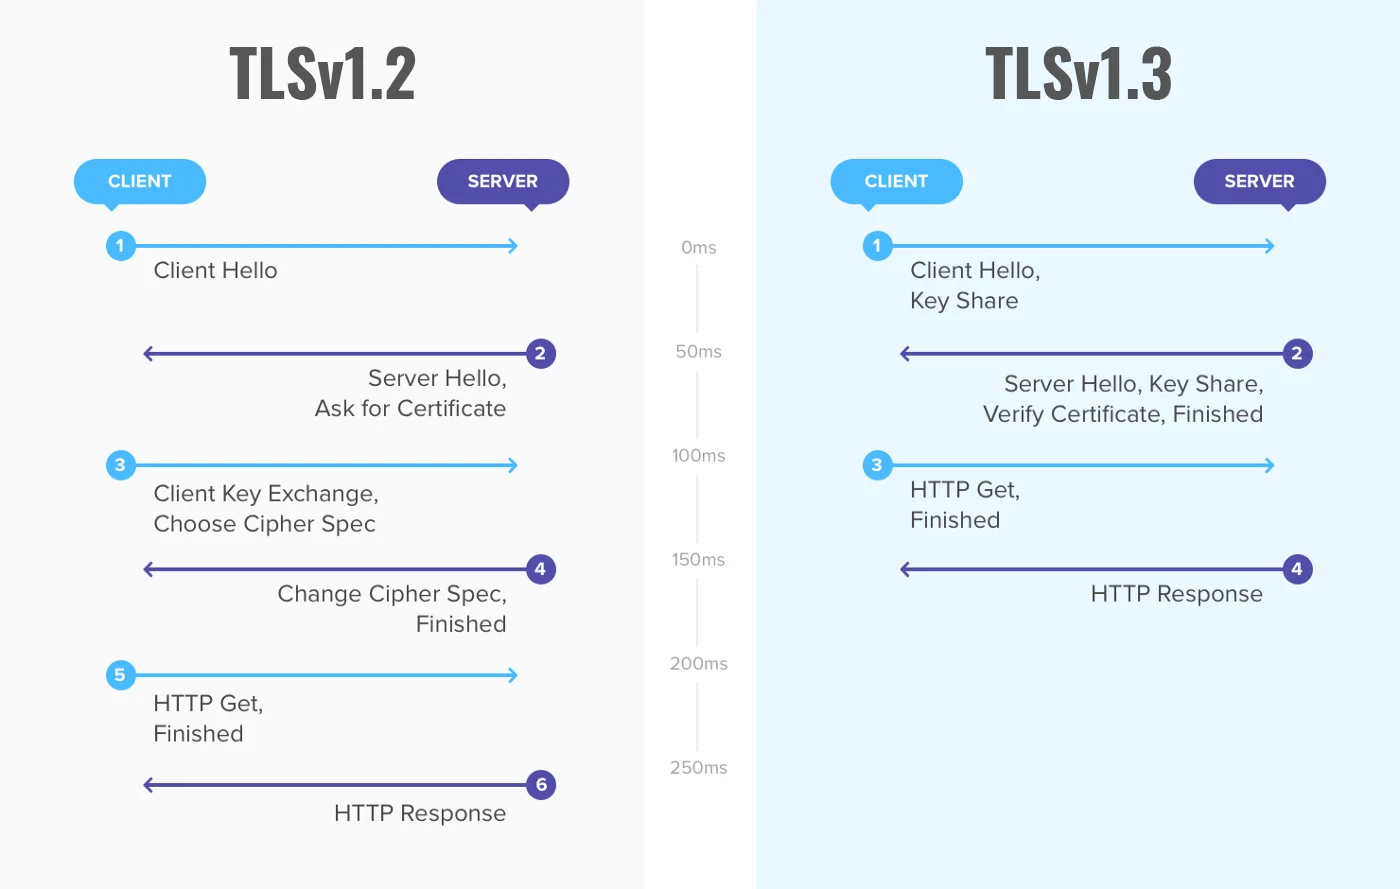 Atšķirības starp TLSv1.2 un TLSv1.3